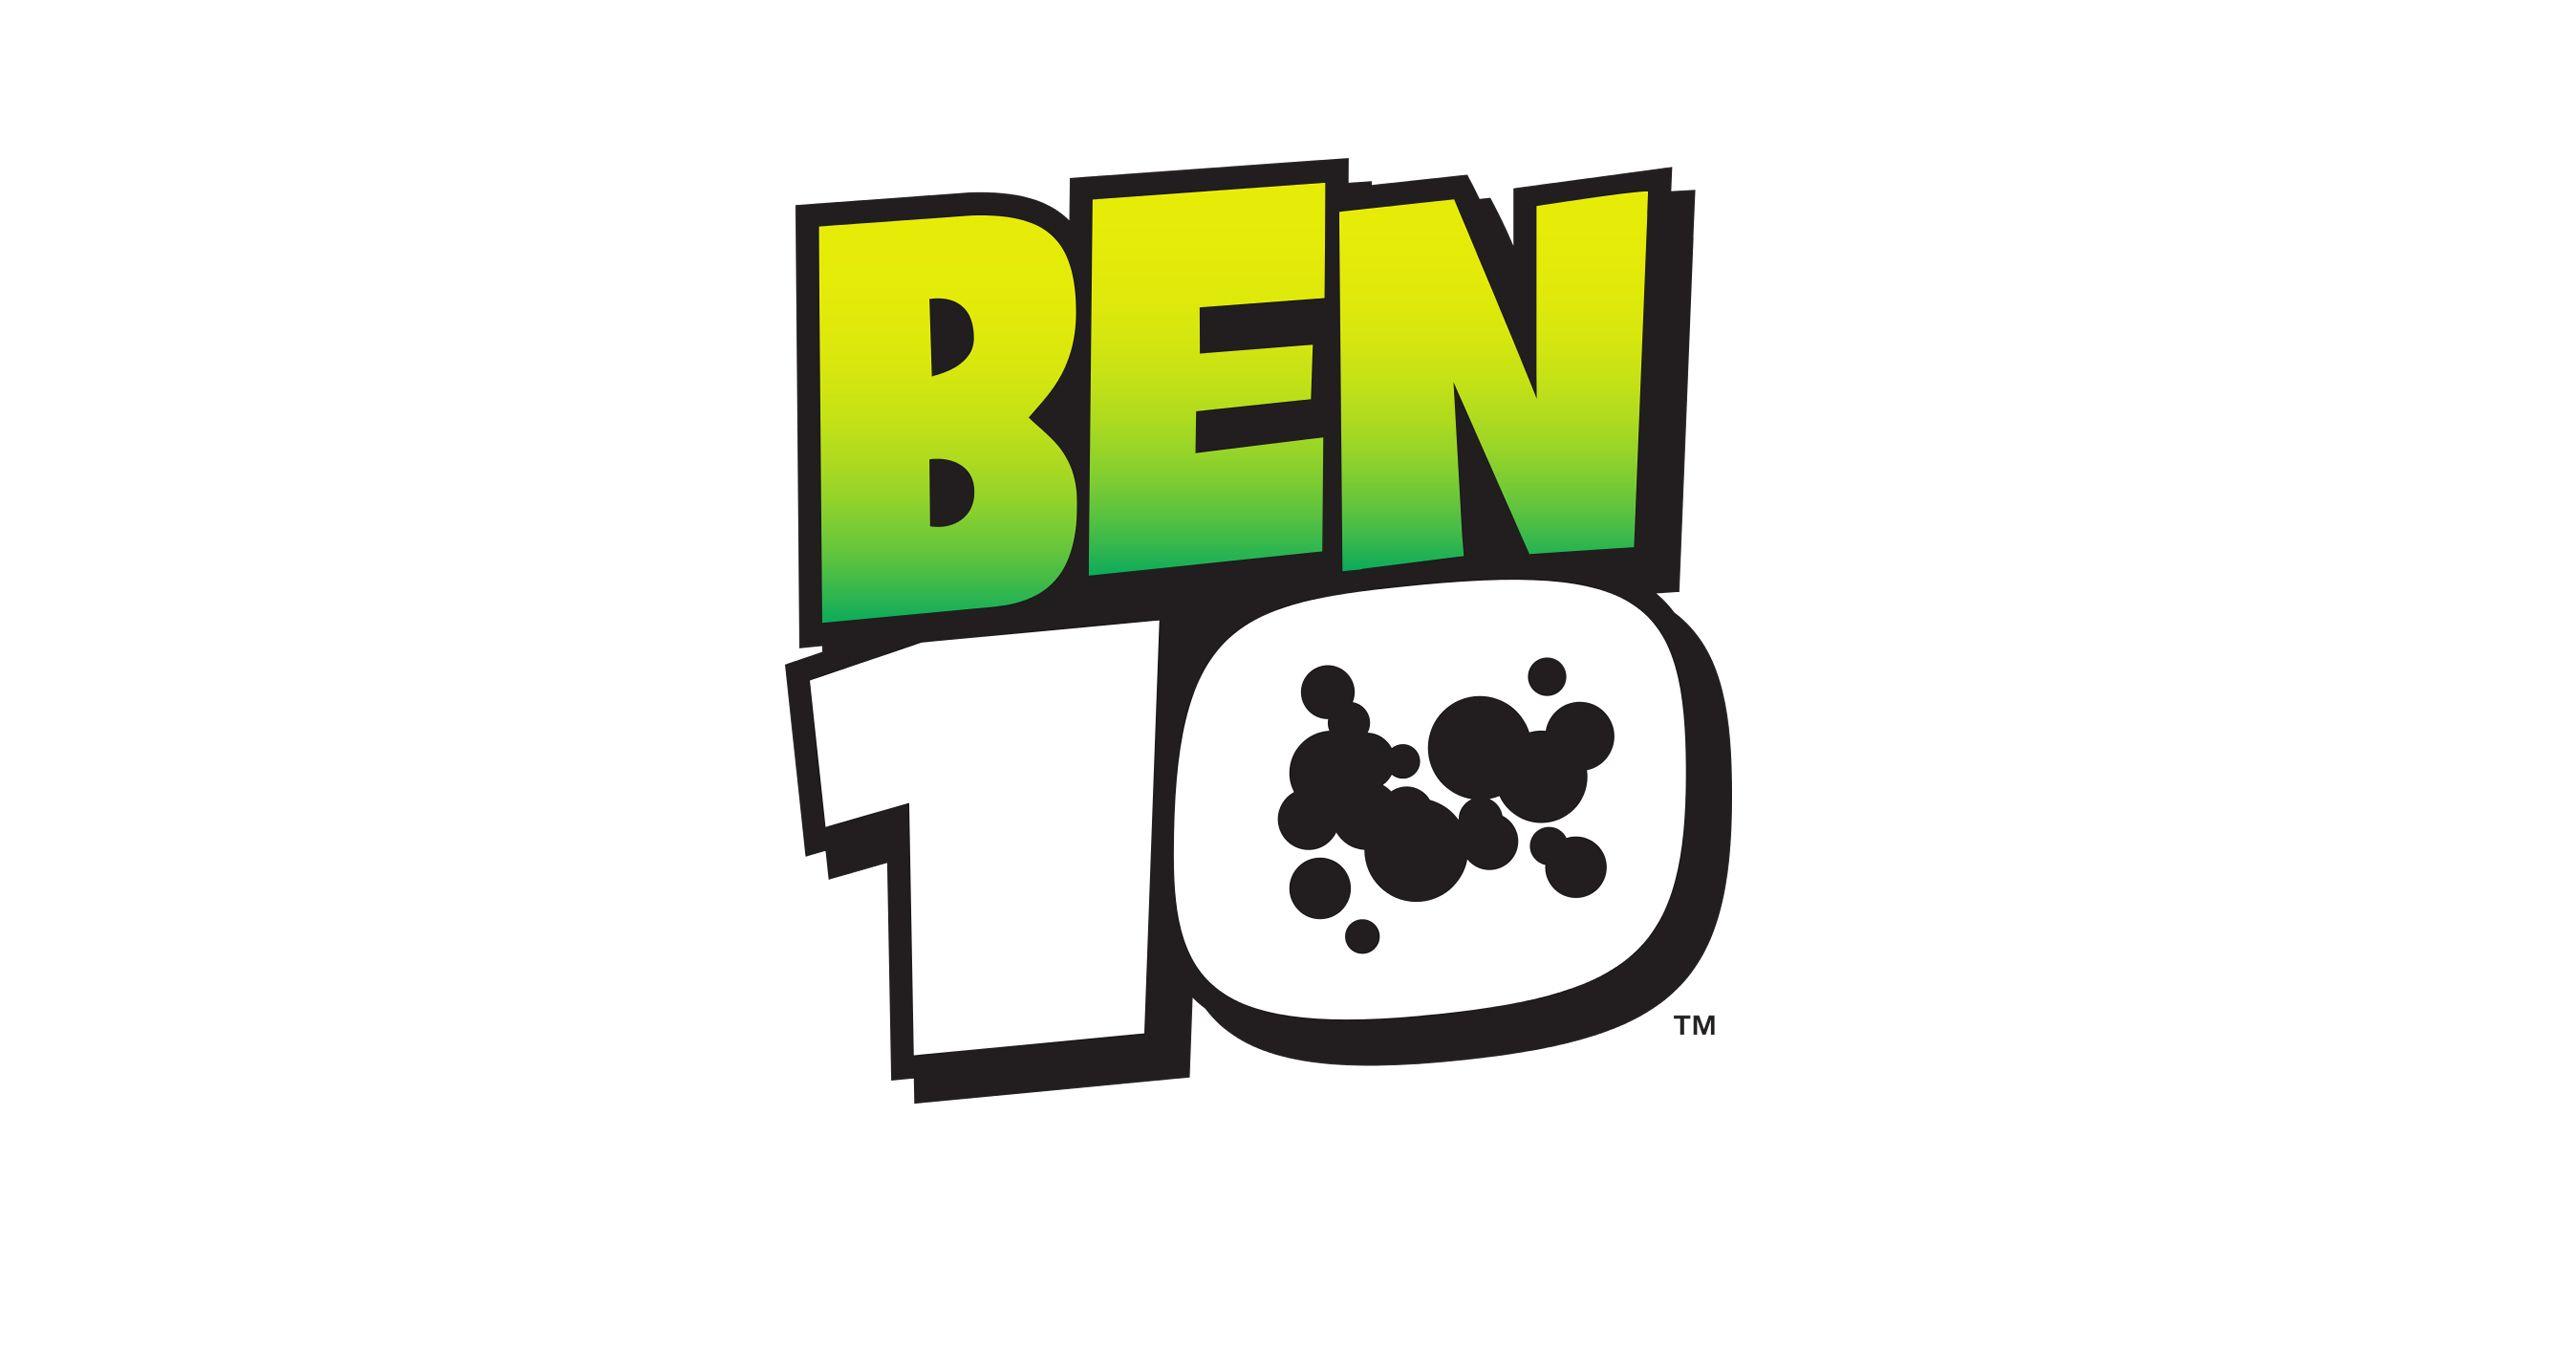 Ben 10 Logo - Ben 10 Logo For Web